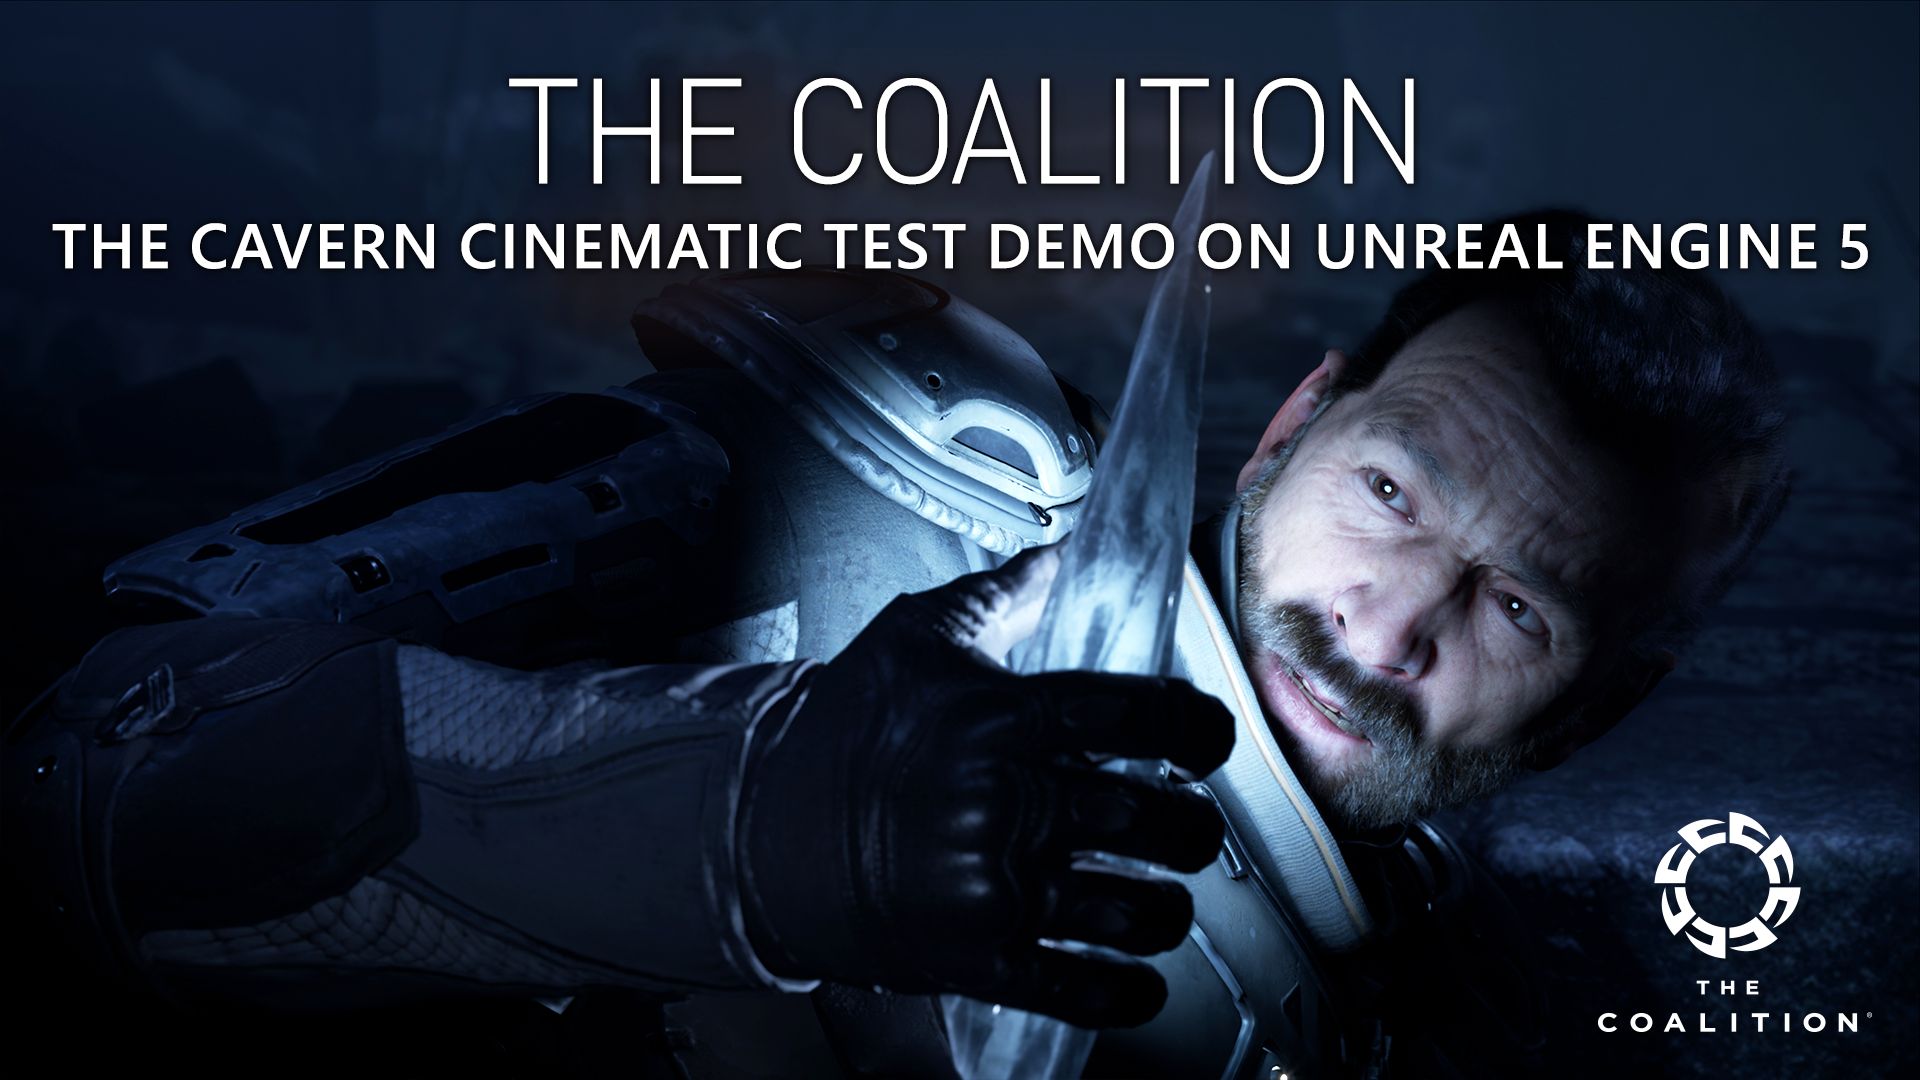 ビデオの対象The Coalition 、グラフィックの描写力が 100 倍向上した新たな Unreal Engine 5 技術デモを公開!!